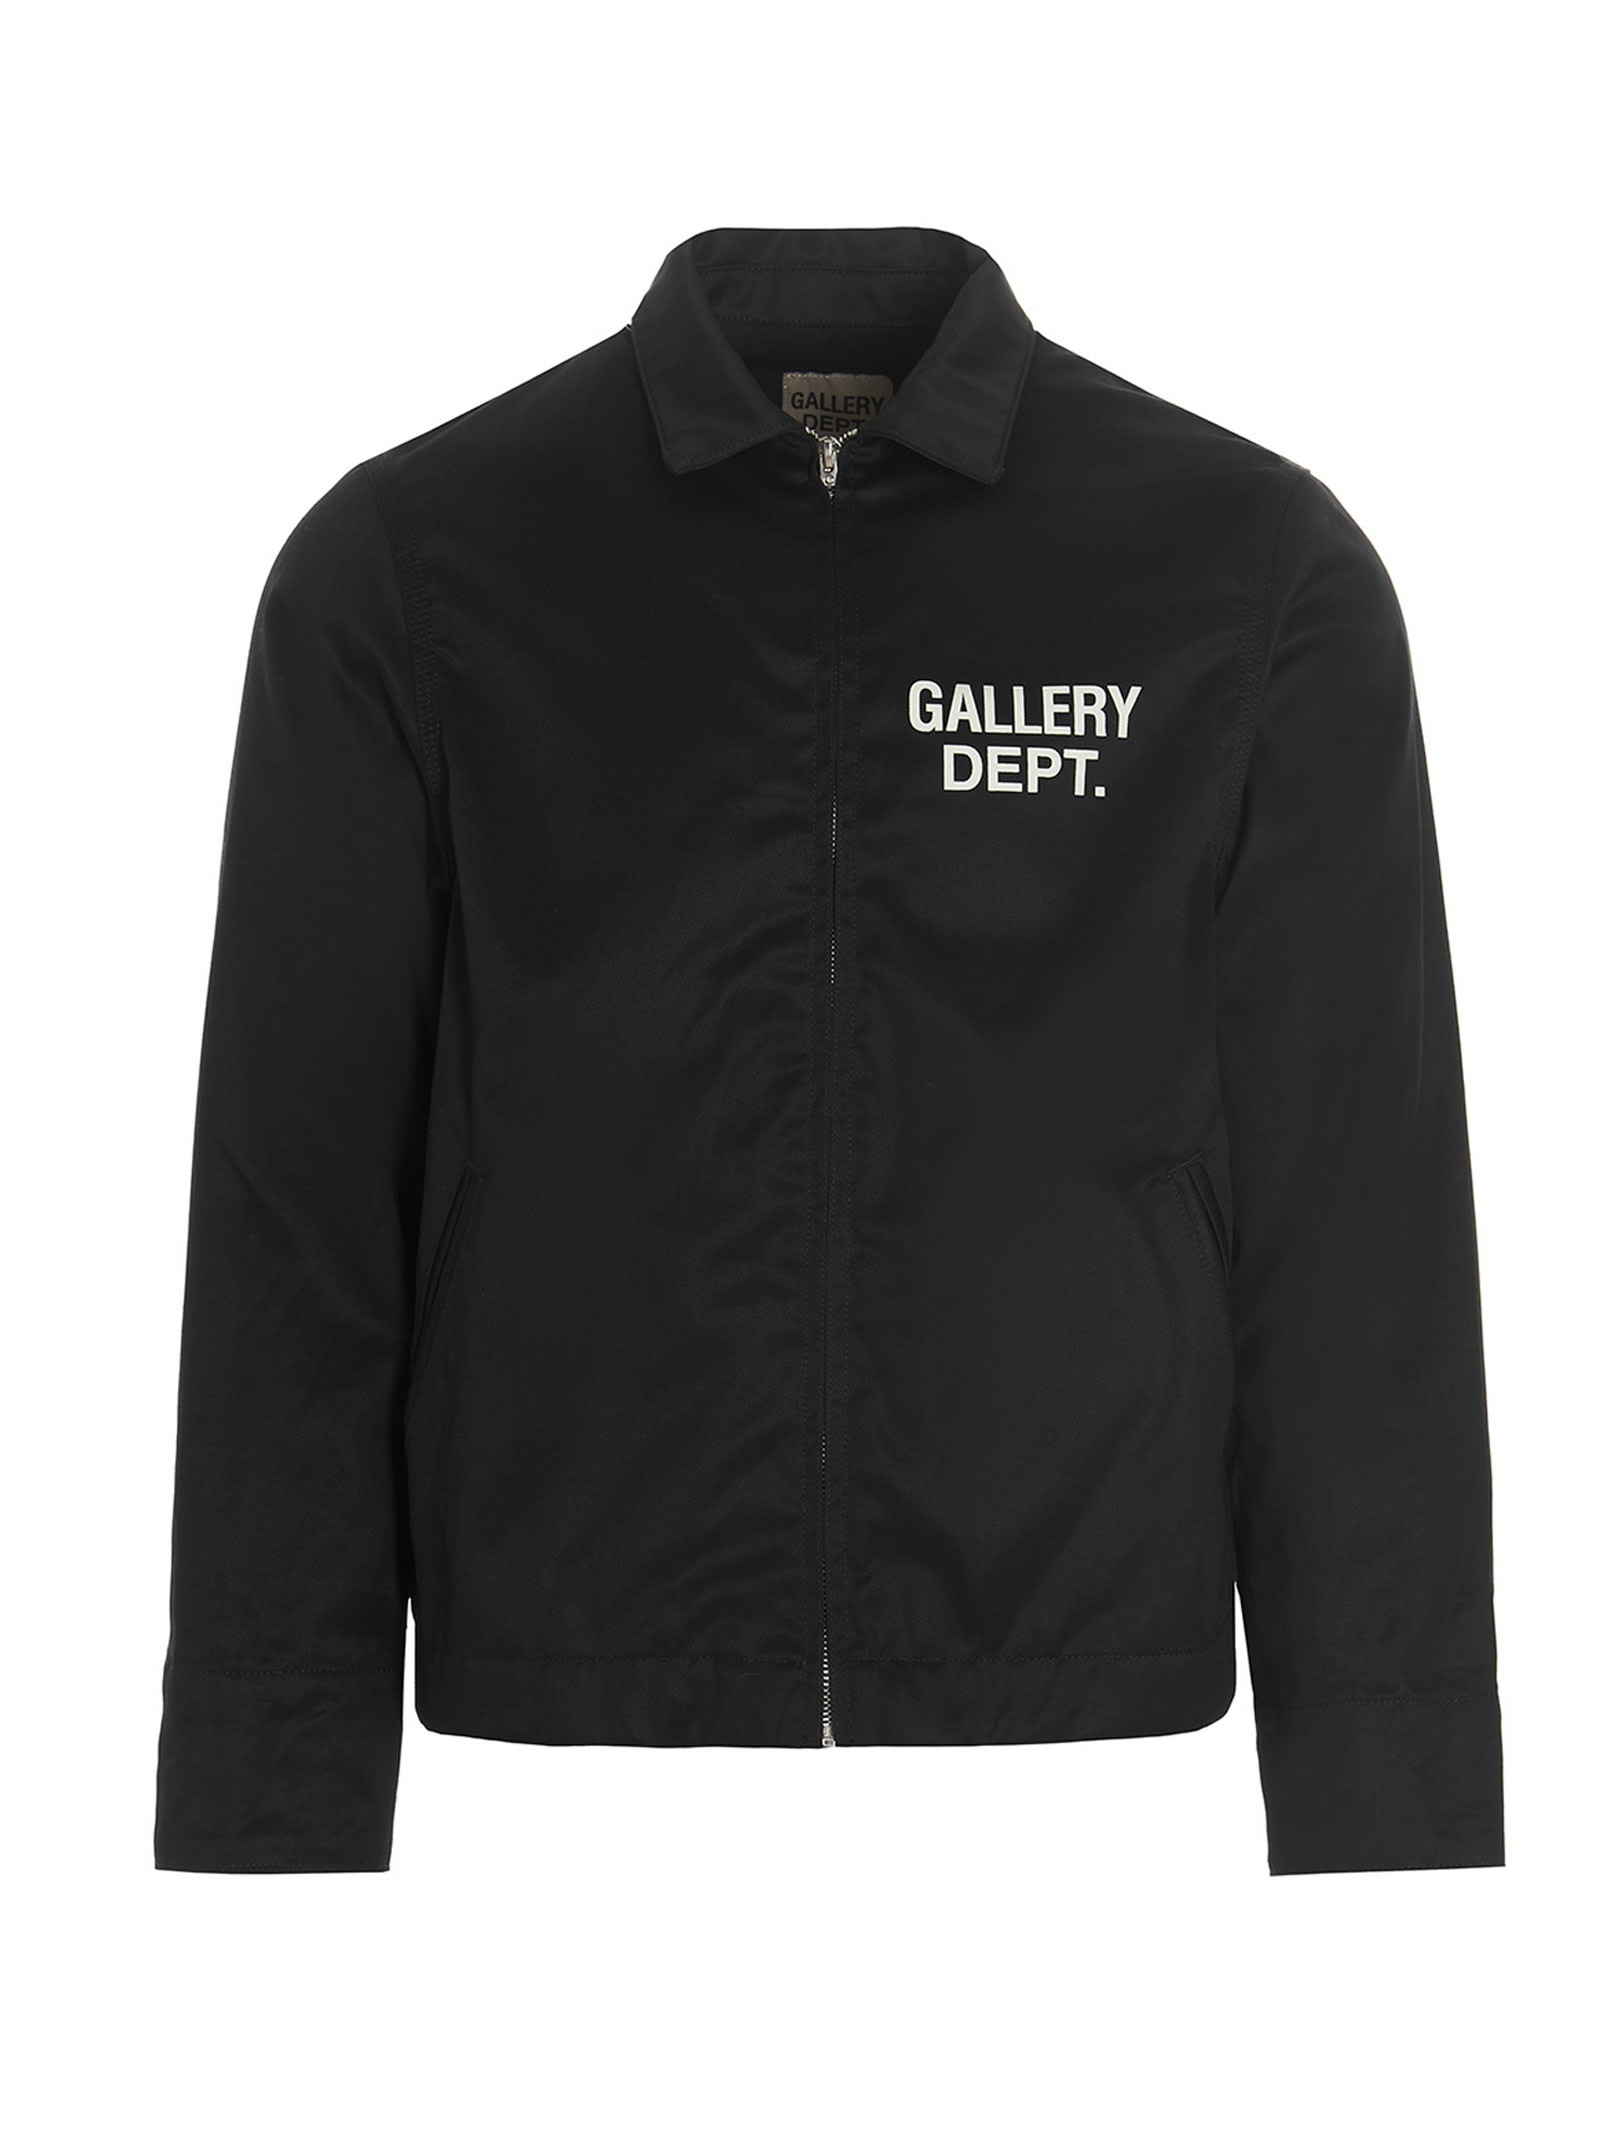 Gallery Dept. Montecito Jacket In Black | ModeSens